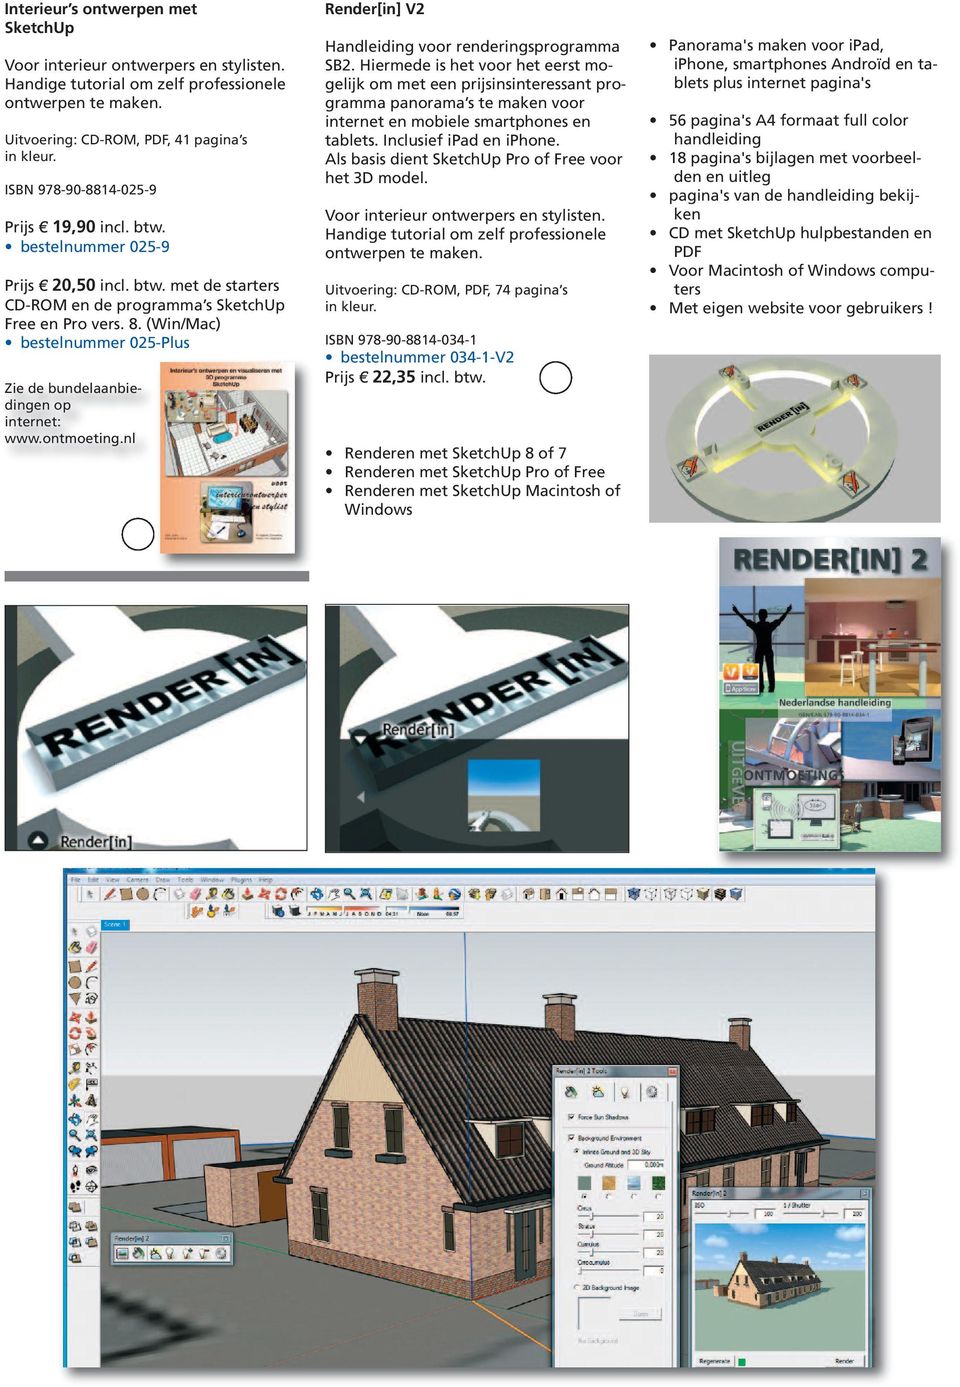 (Win/Mac) bestelnummer 025-Plus Zie de bundelaanbiedingen op internet: www.ontmoeting.nl Render[in] V2 Handleiding voor renderingsprogramma SB2.